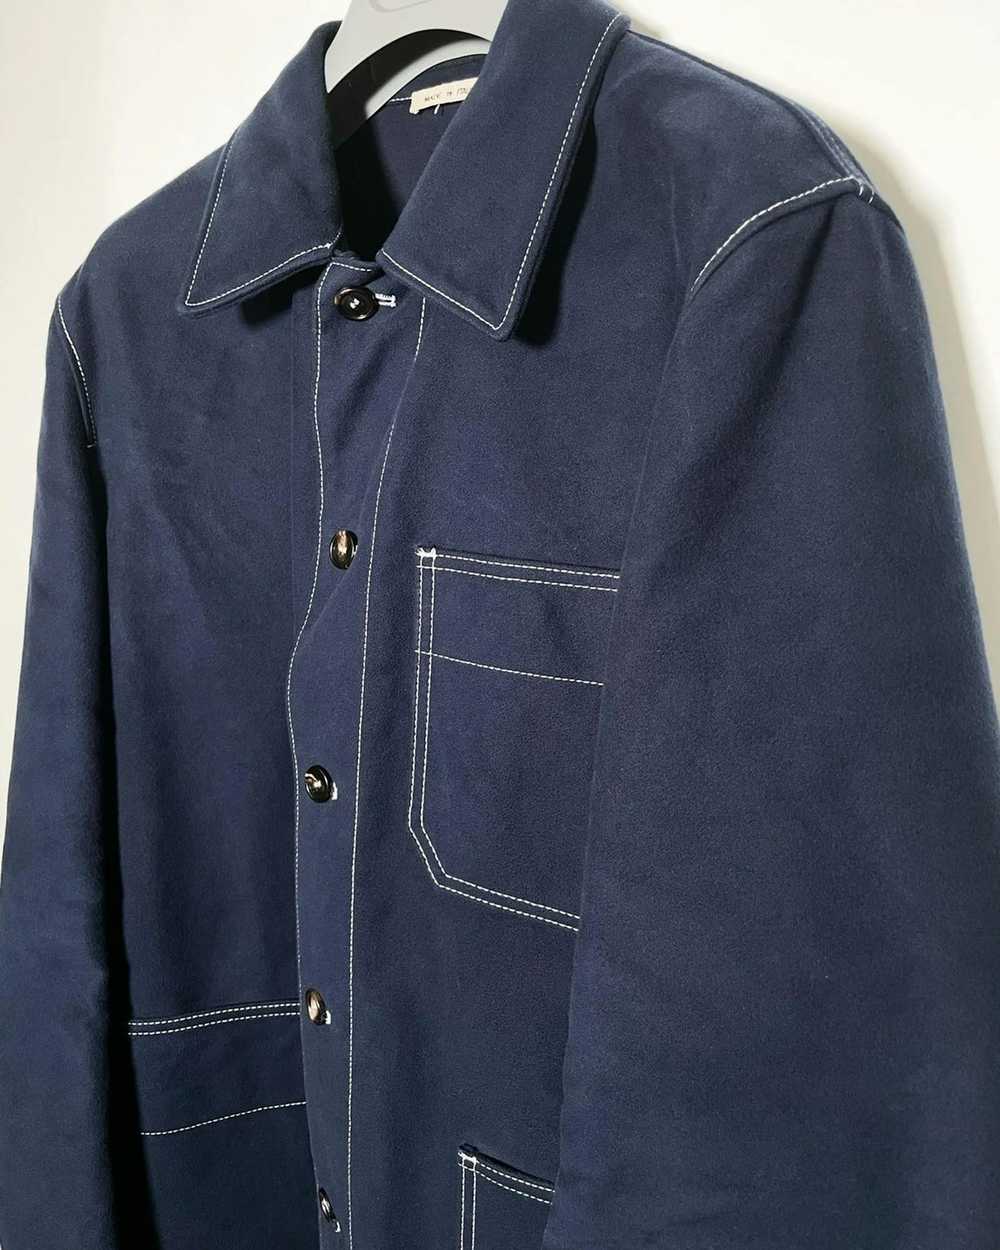 Marni Cotton Gabardine Work Jacket - image 3